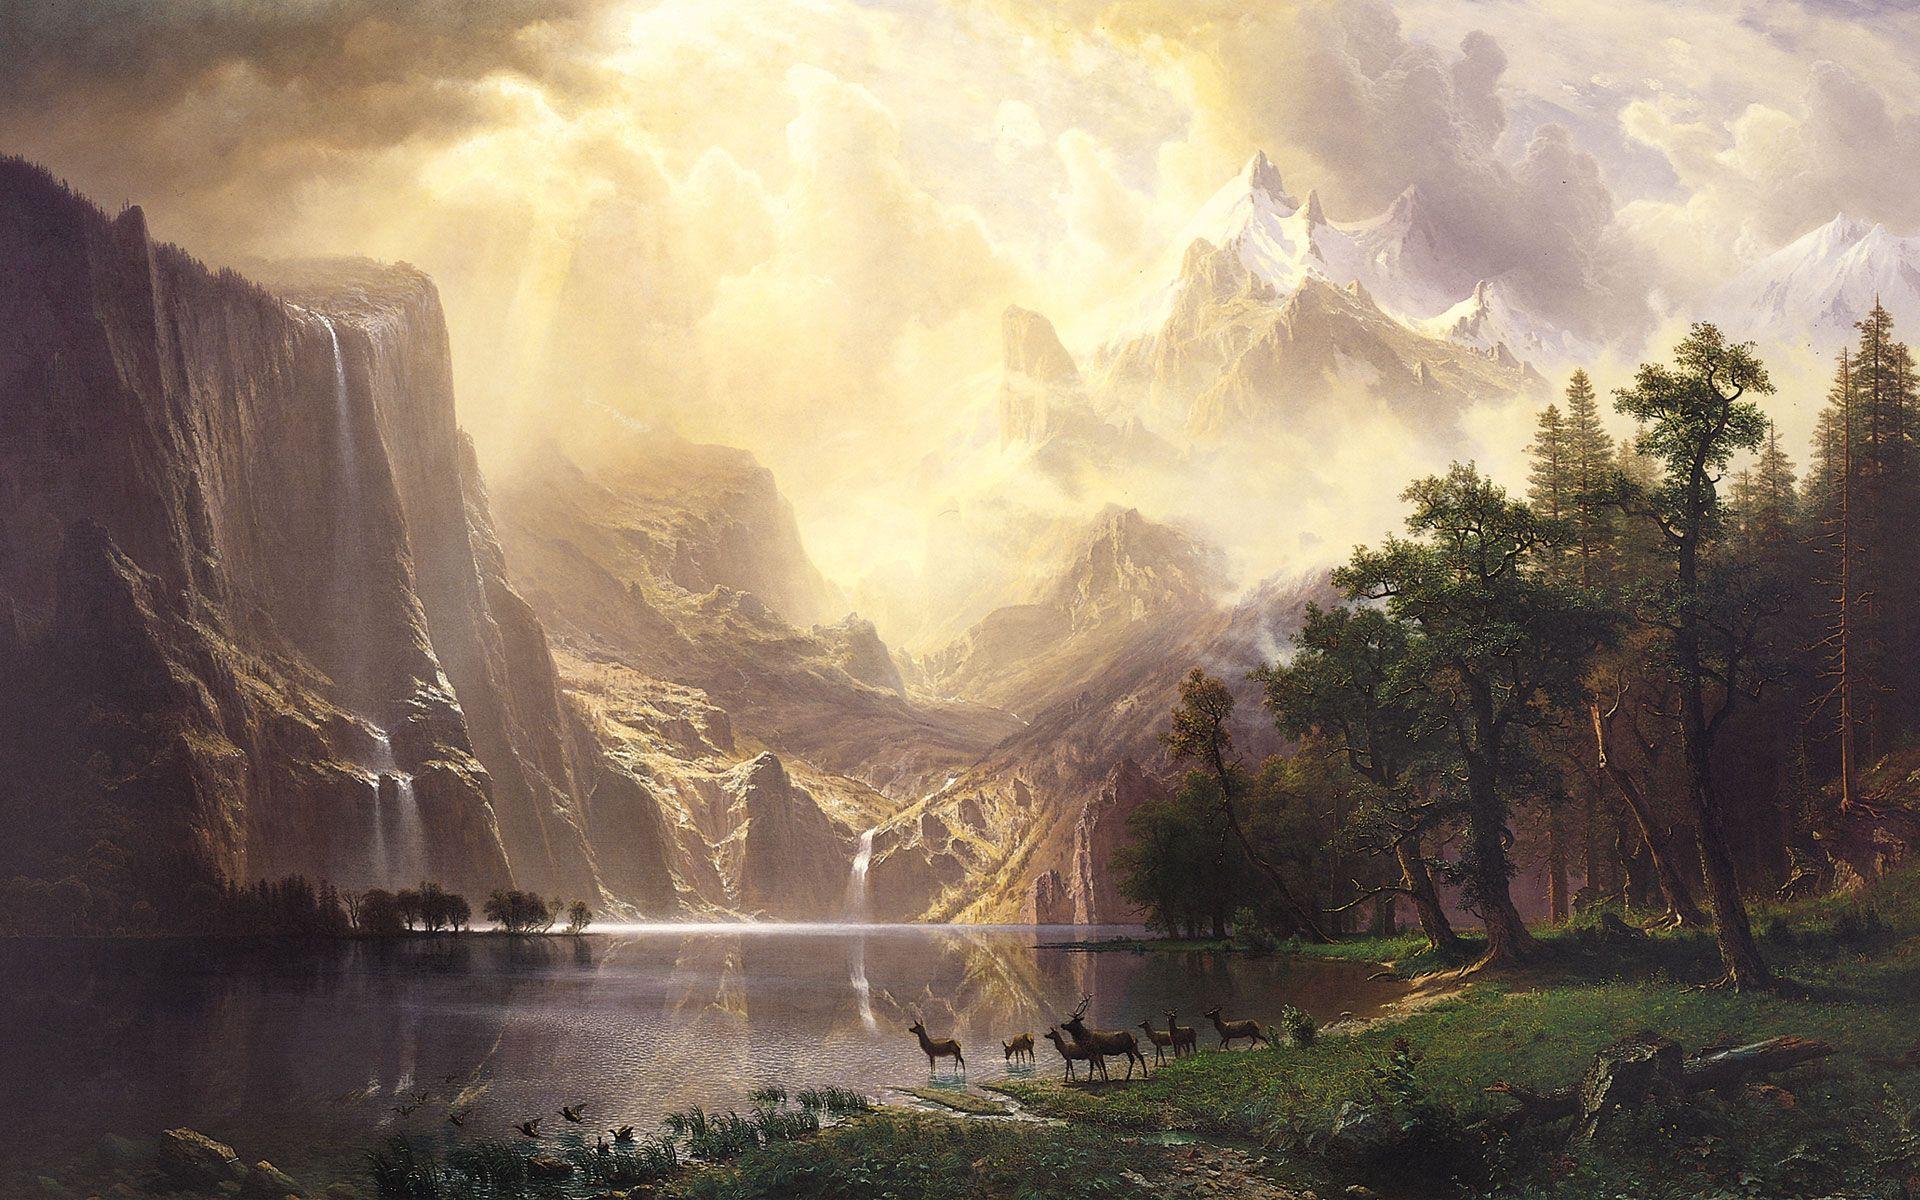 نقاشی دوران رمانتیک در انگلستان ایالات متحده سبک رمانتیسیسم در میان کوه های سیرا نوادا کالیفرنیا توسط آلبرت بیرشتات